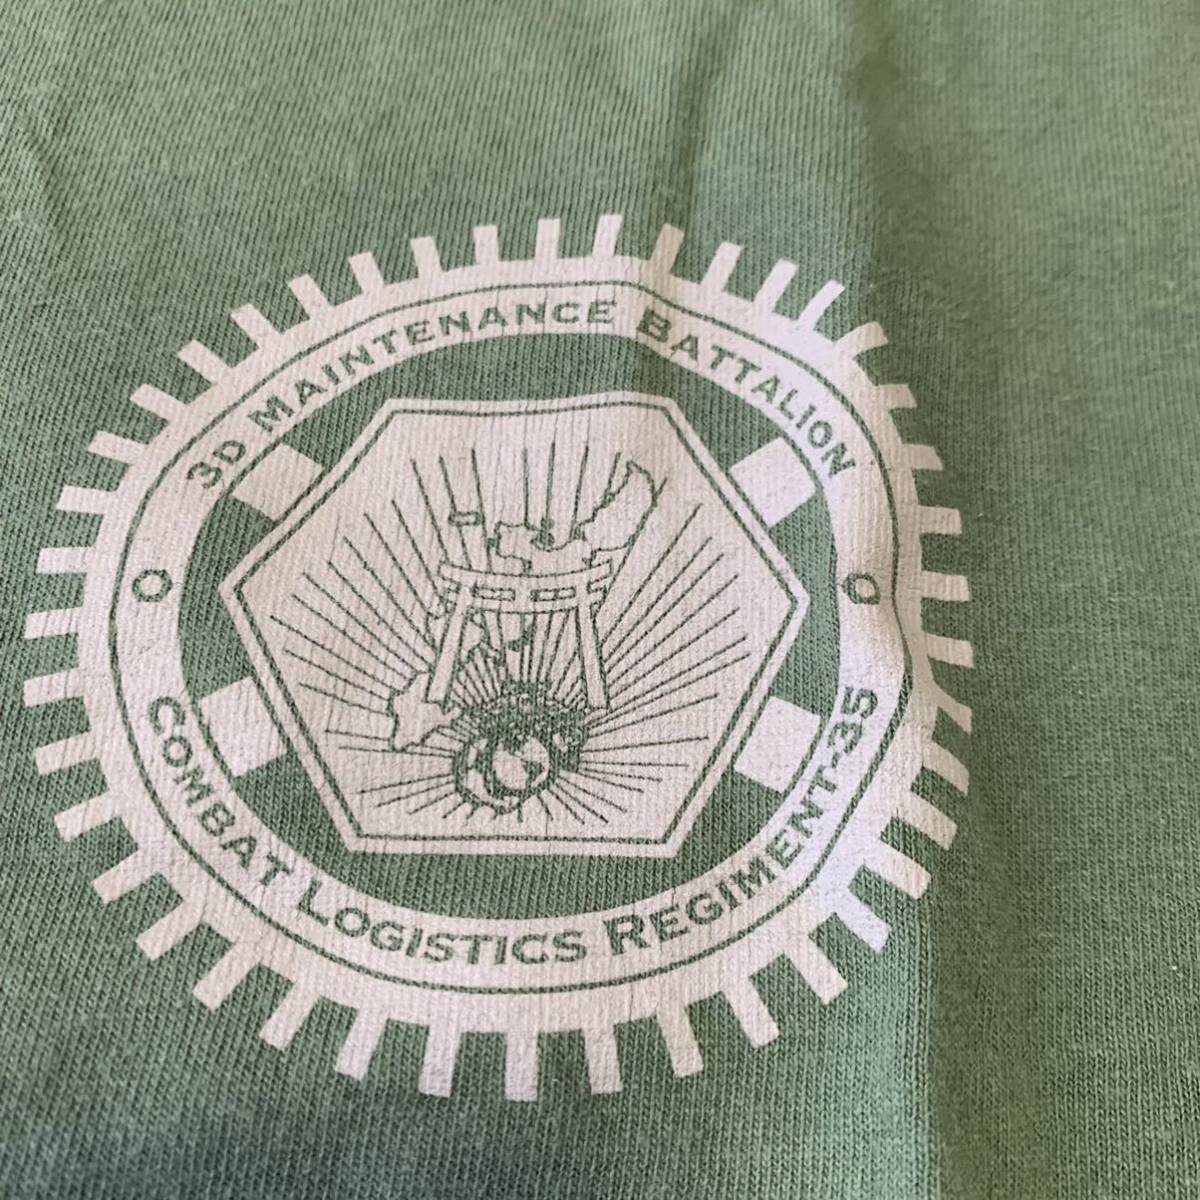   Окинава   американская армия   выпуск   товар  3D MAINTENANCE BATTALION  футболка   фешенебельный   мода    бу одежда   винтаж  LARGE OD ( контрольный   номер QR16)